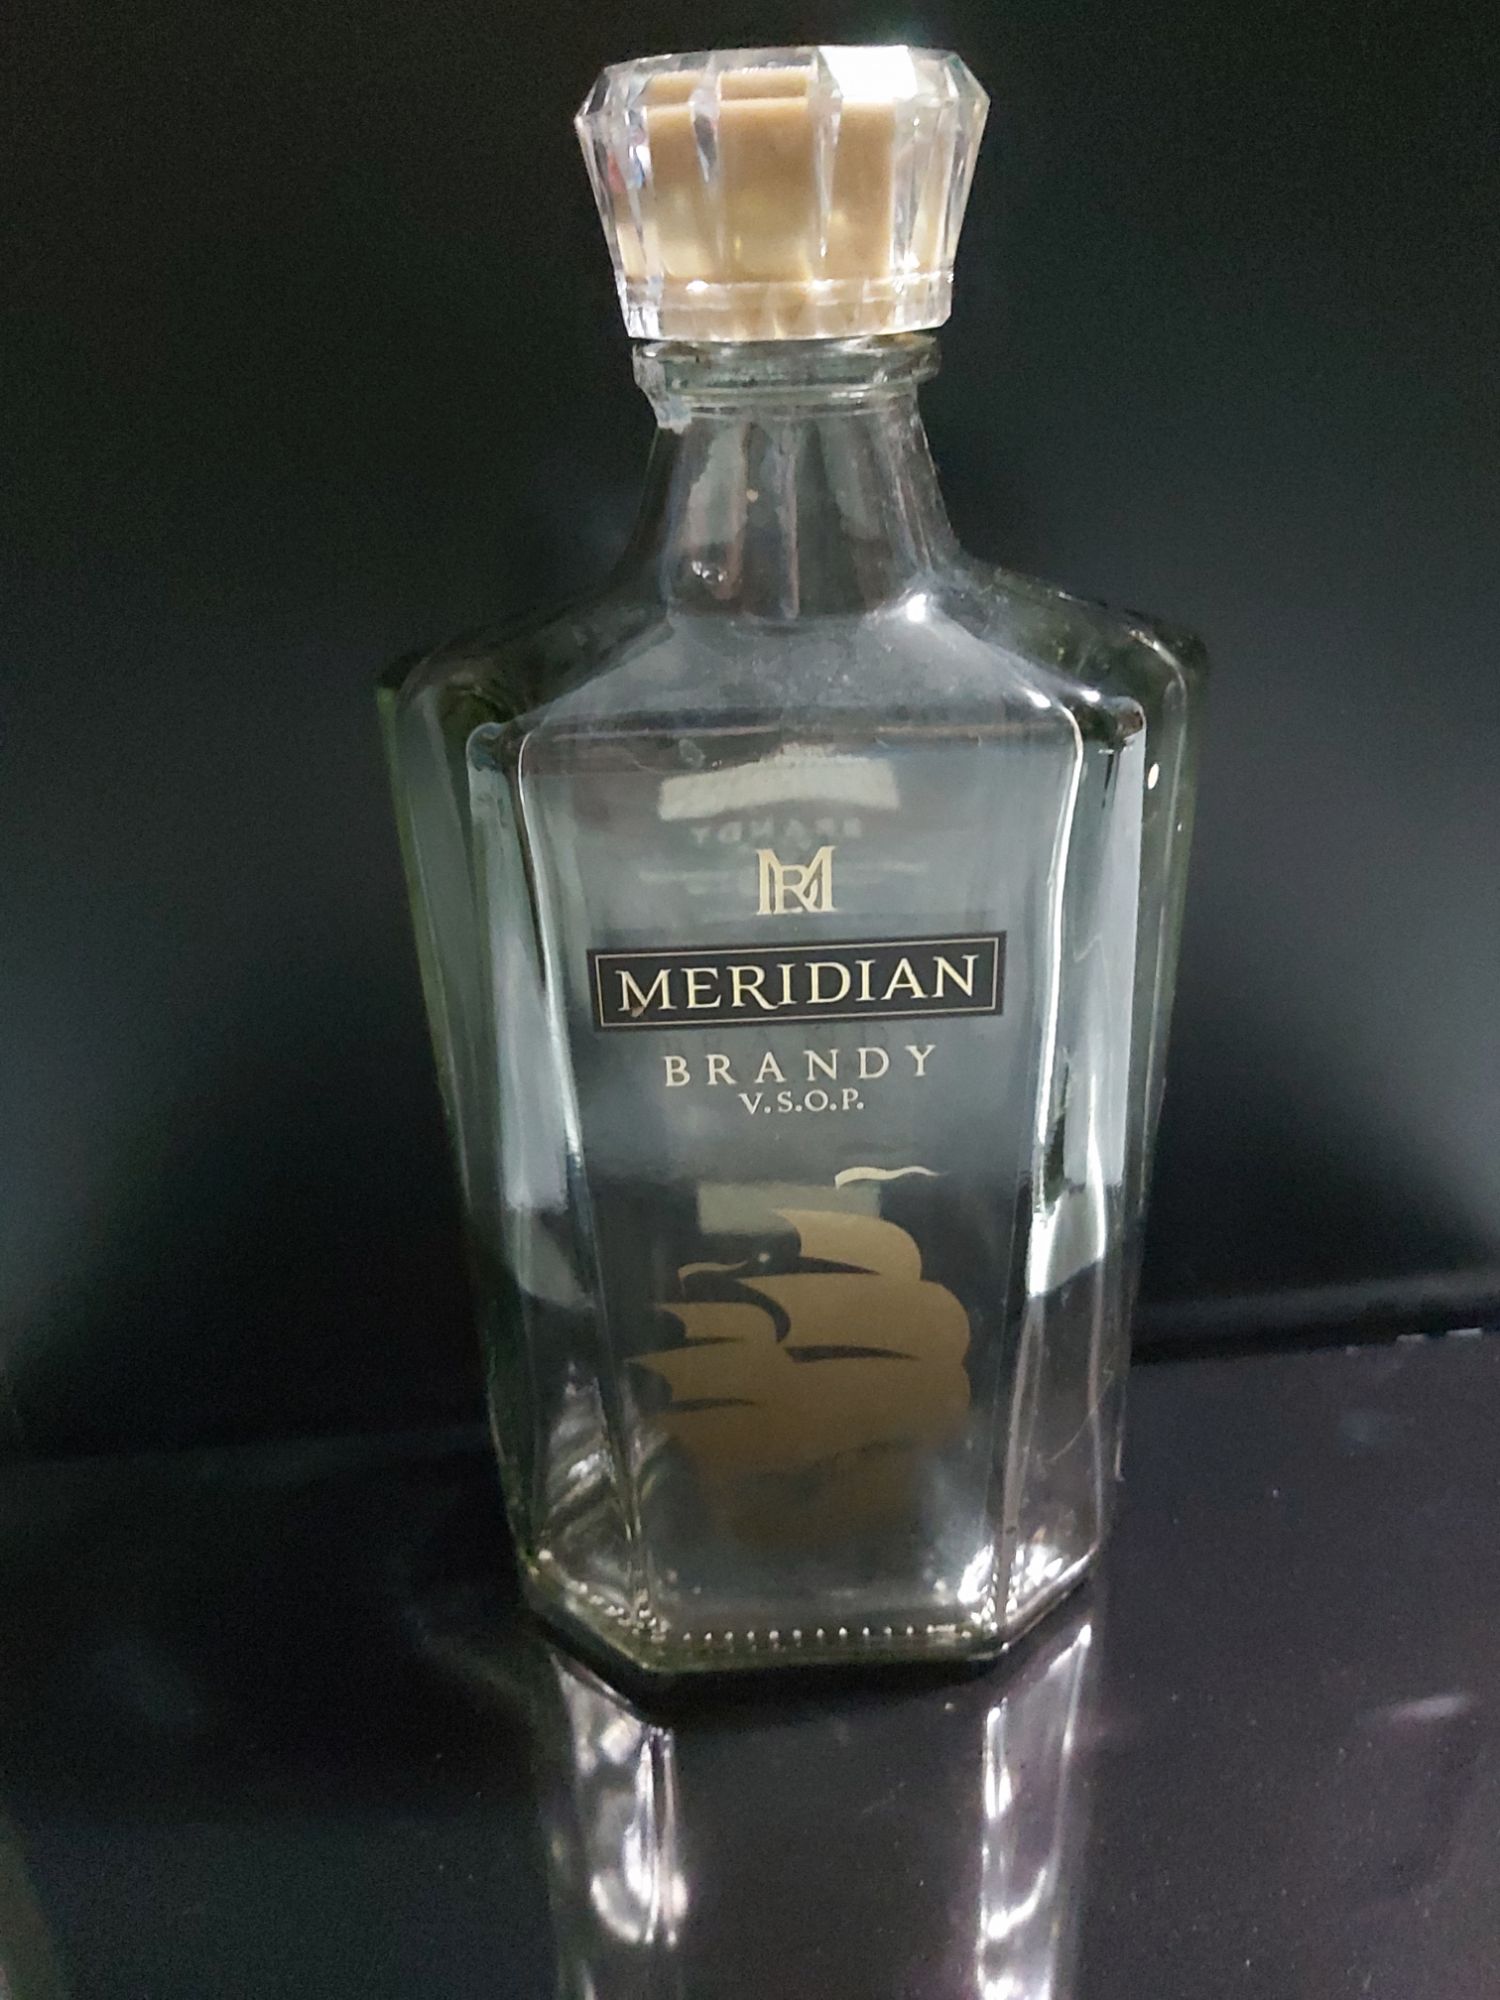 Meridian Brandy ราคาถูก ซื้อออนไลน์ที่ - ก.ค. 2023 | Lazada.Co.Th